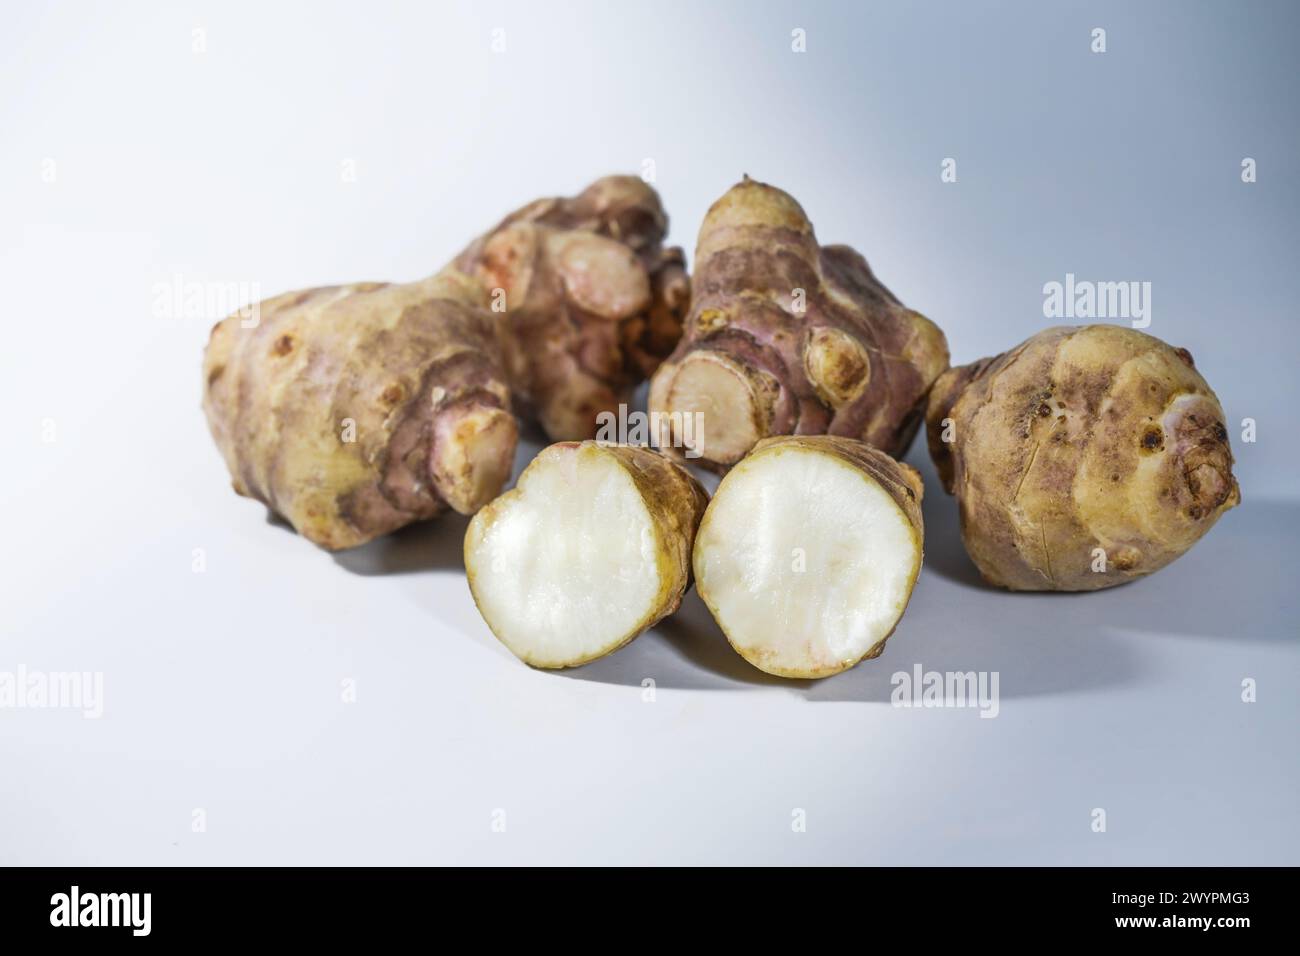 Topinambur (Helianthus tuberosus), espèce de tournesol utilisée comme légume-racine, riche en inuline et donc recommandée pour dia Banque D'Images